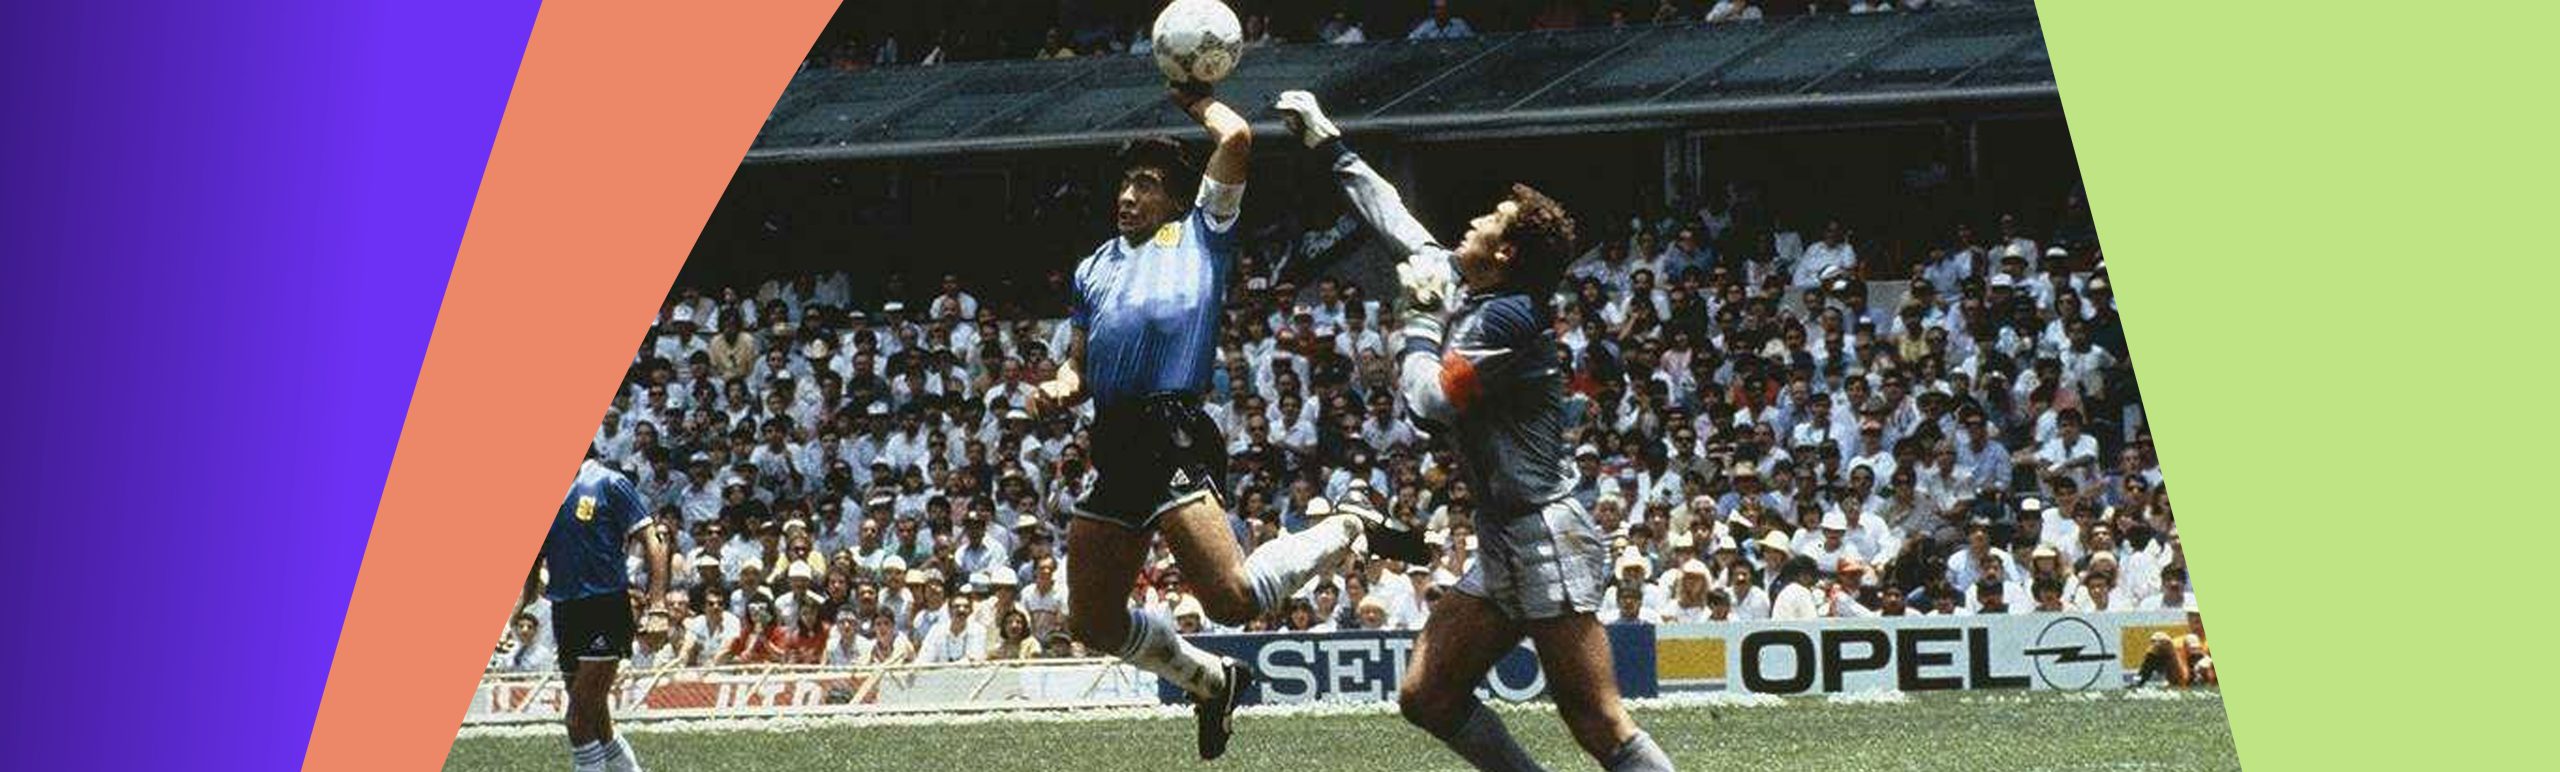 Maradona 1986 yilda qo‘li bilan gol urgan o‘yindagi to‘p auksionga qo‘yildi 1986 yilgi jahon chempionatida Diyego Maradona gol urgan o‘yindagi to‘p kimoshdi savdosida 3 million funtga sotilishi mumkin.